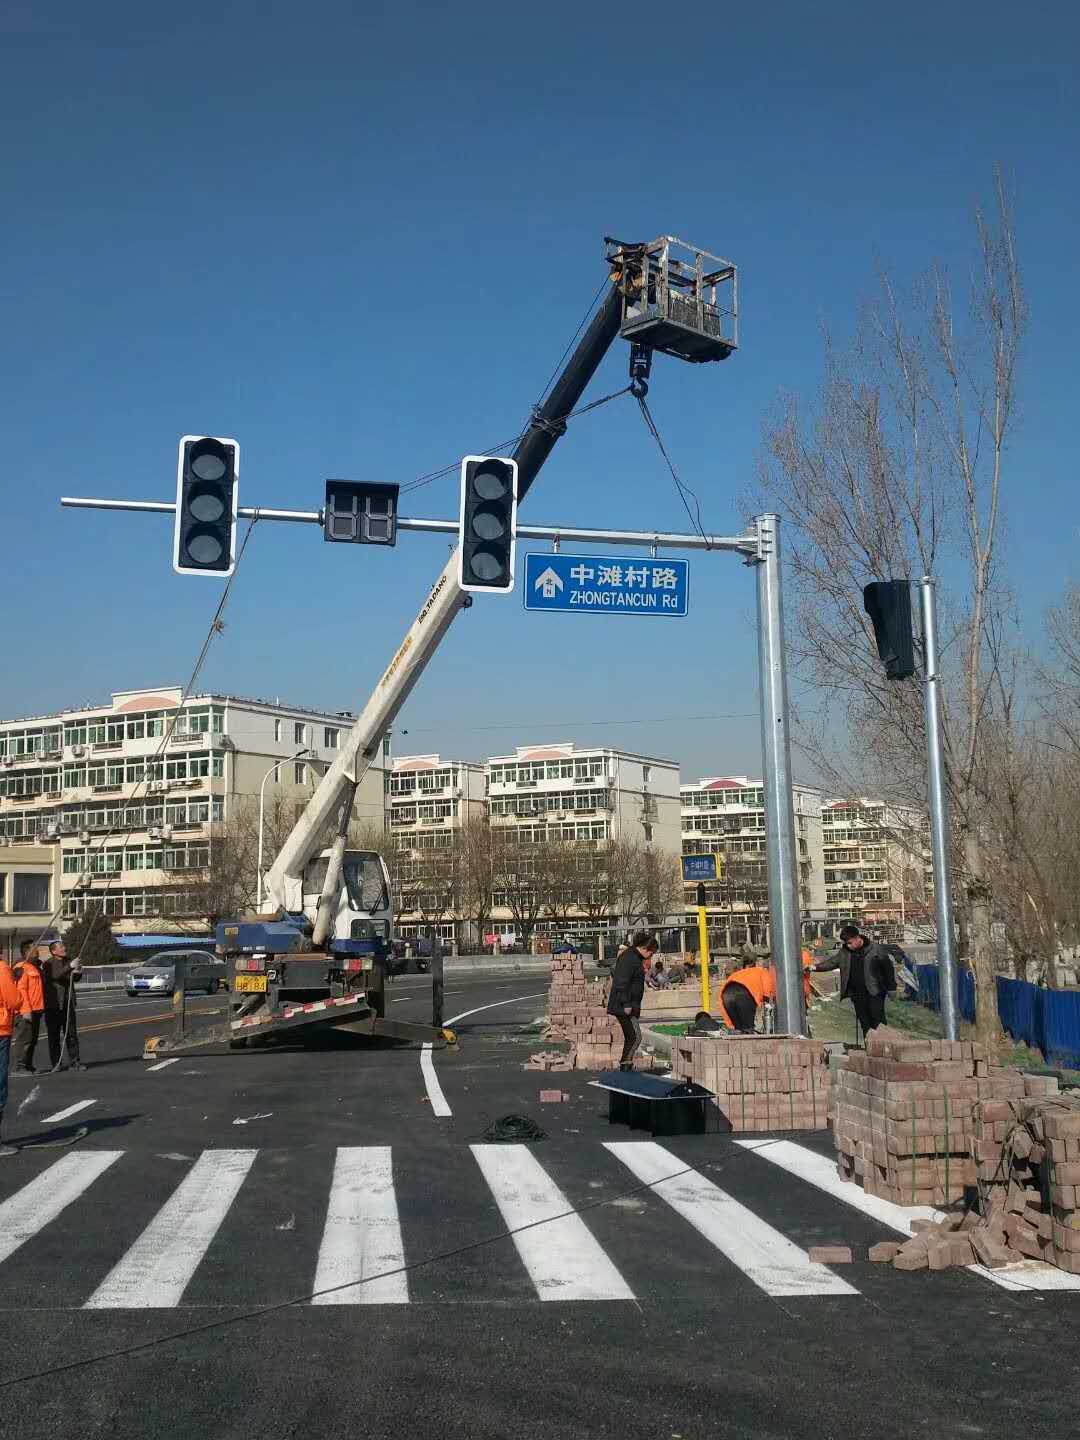 北京道路红绿灯交通信号灯灯立柱厂